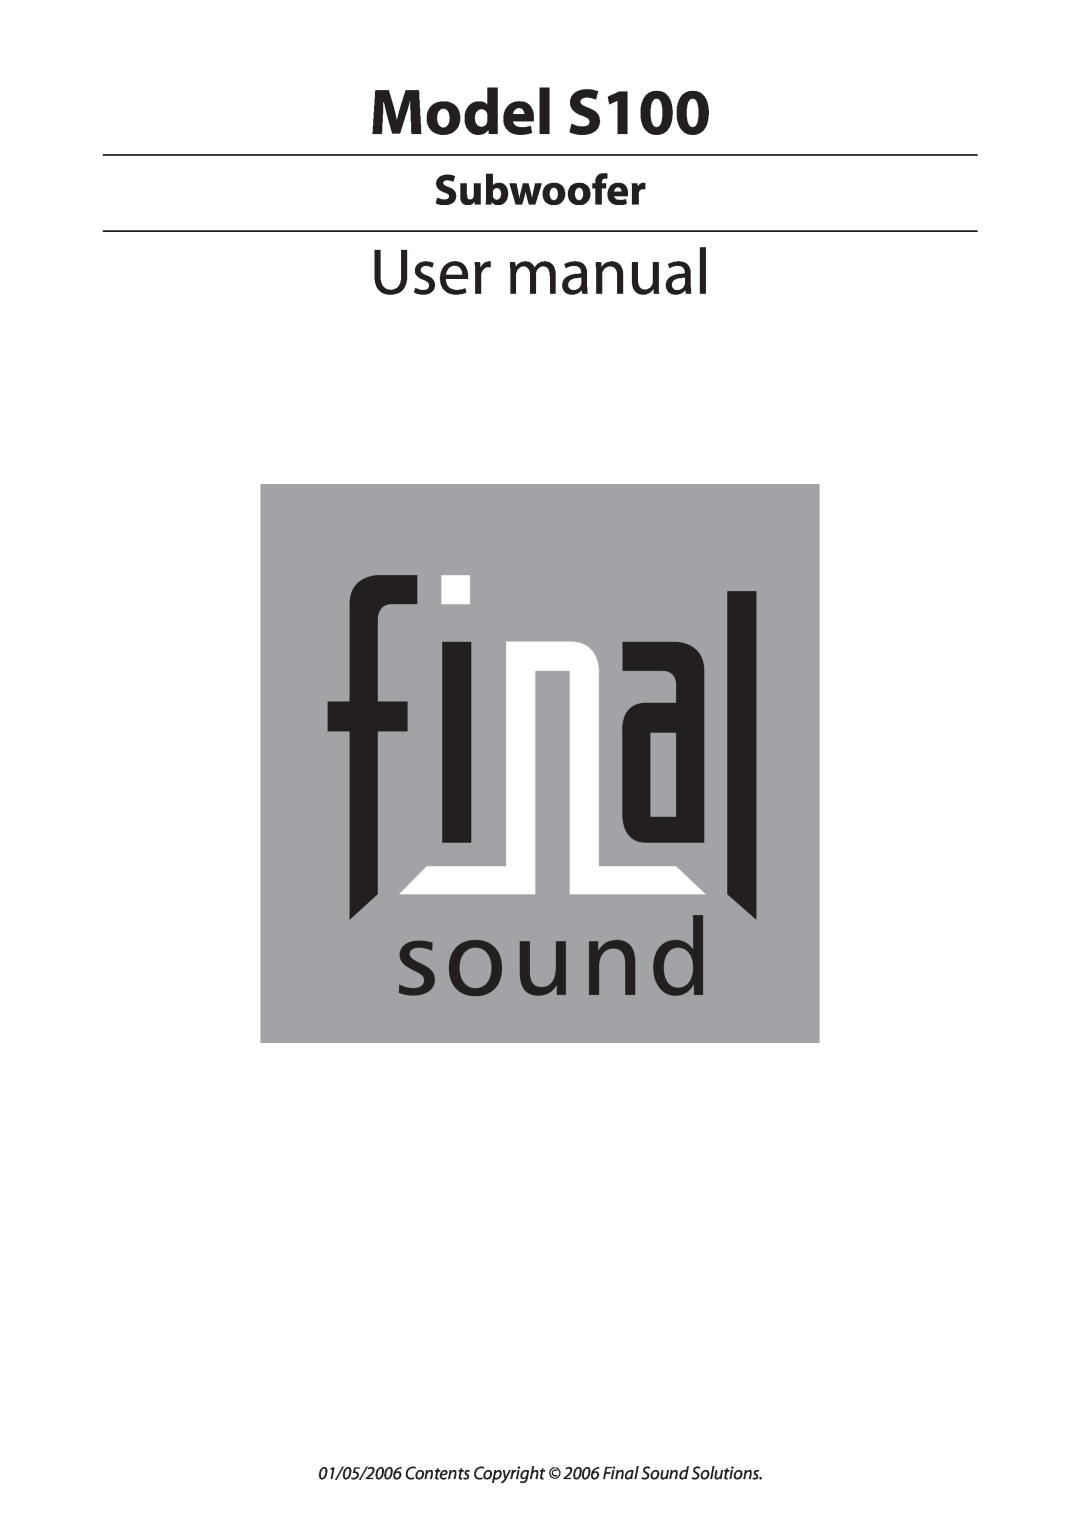 Final Sound user manual Model S100, Subwoofer 